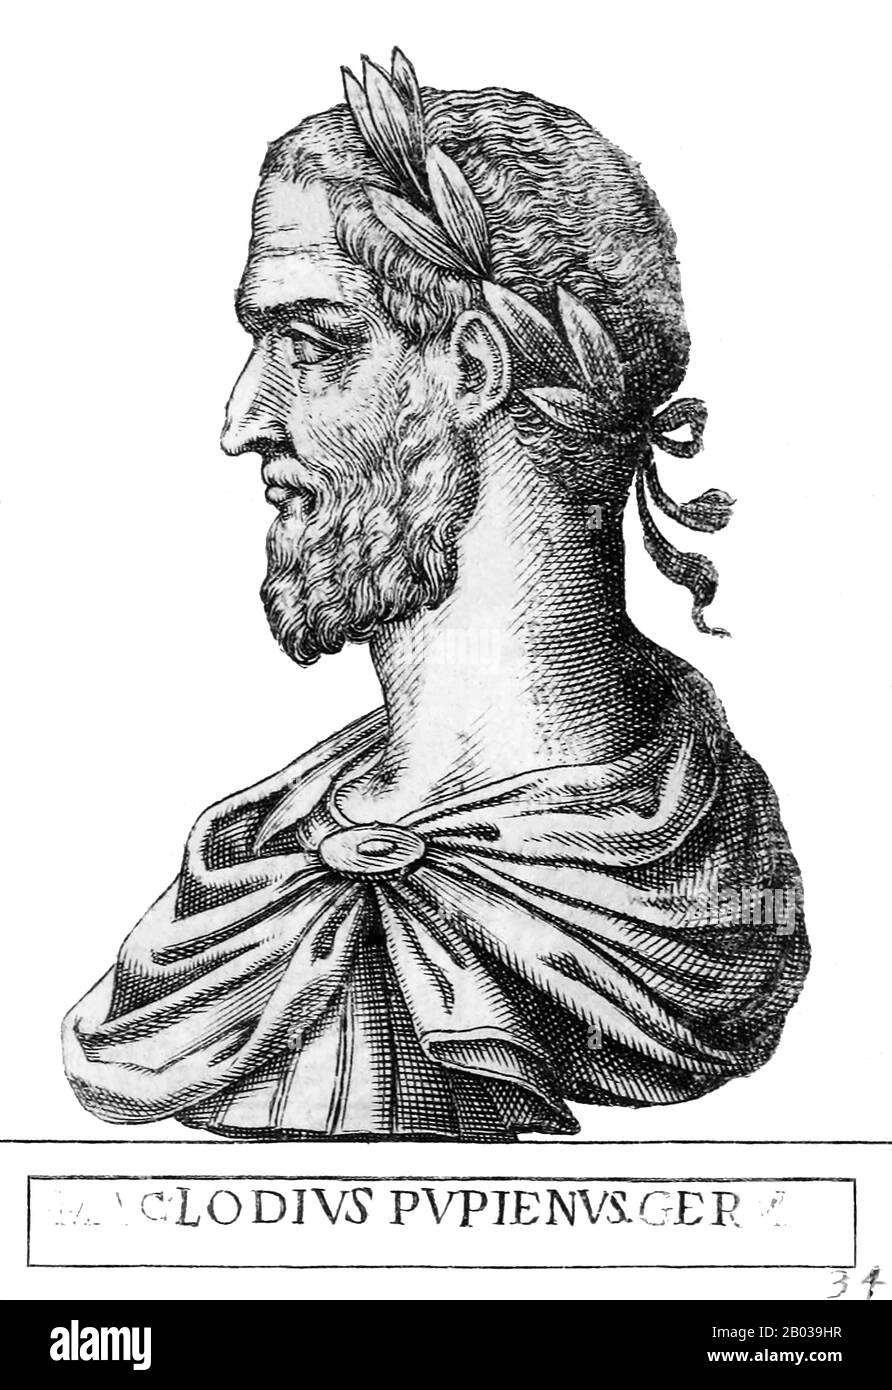 Pupienus (165/170-238), auch Pupienus Maximus genannt, war ein Senator im römischen Senat, der durch militärischen Erfolg unter der Herrschaft der Dynastie der Seweraner an die Macht und den Einfluss angetreten war. Er bekleidete zwei Amtszeiten als Consul und wurde ein wichtiges Mitglied des Senats. Als Gordian I. und sein Sohn im Jahr 238 zum Kaiser ausgerufen wurden, erkannte der Senat sie sofort unter Missachtung von Kaiser Maximinus Thrax an. Pupienus, bis dahin ein älterer Mann, wurde in ein Komitee zur Koordination der Bemühungen zur Vereitelung von Maximinus eingesetzt, bis die Gordianer in Rom eintreffen konnten. Die Gordianer starben weniger als einen Monat nach ihrem Abkl Stockfoto